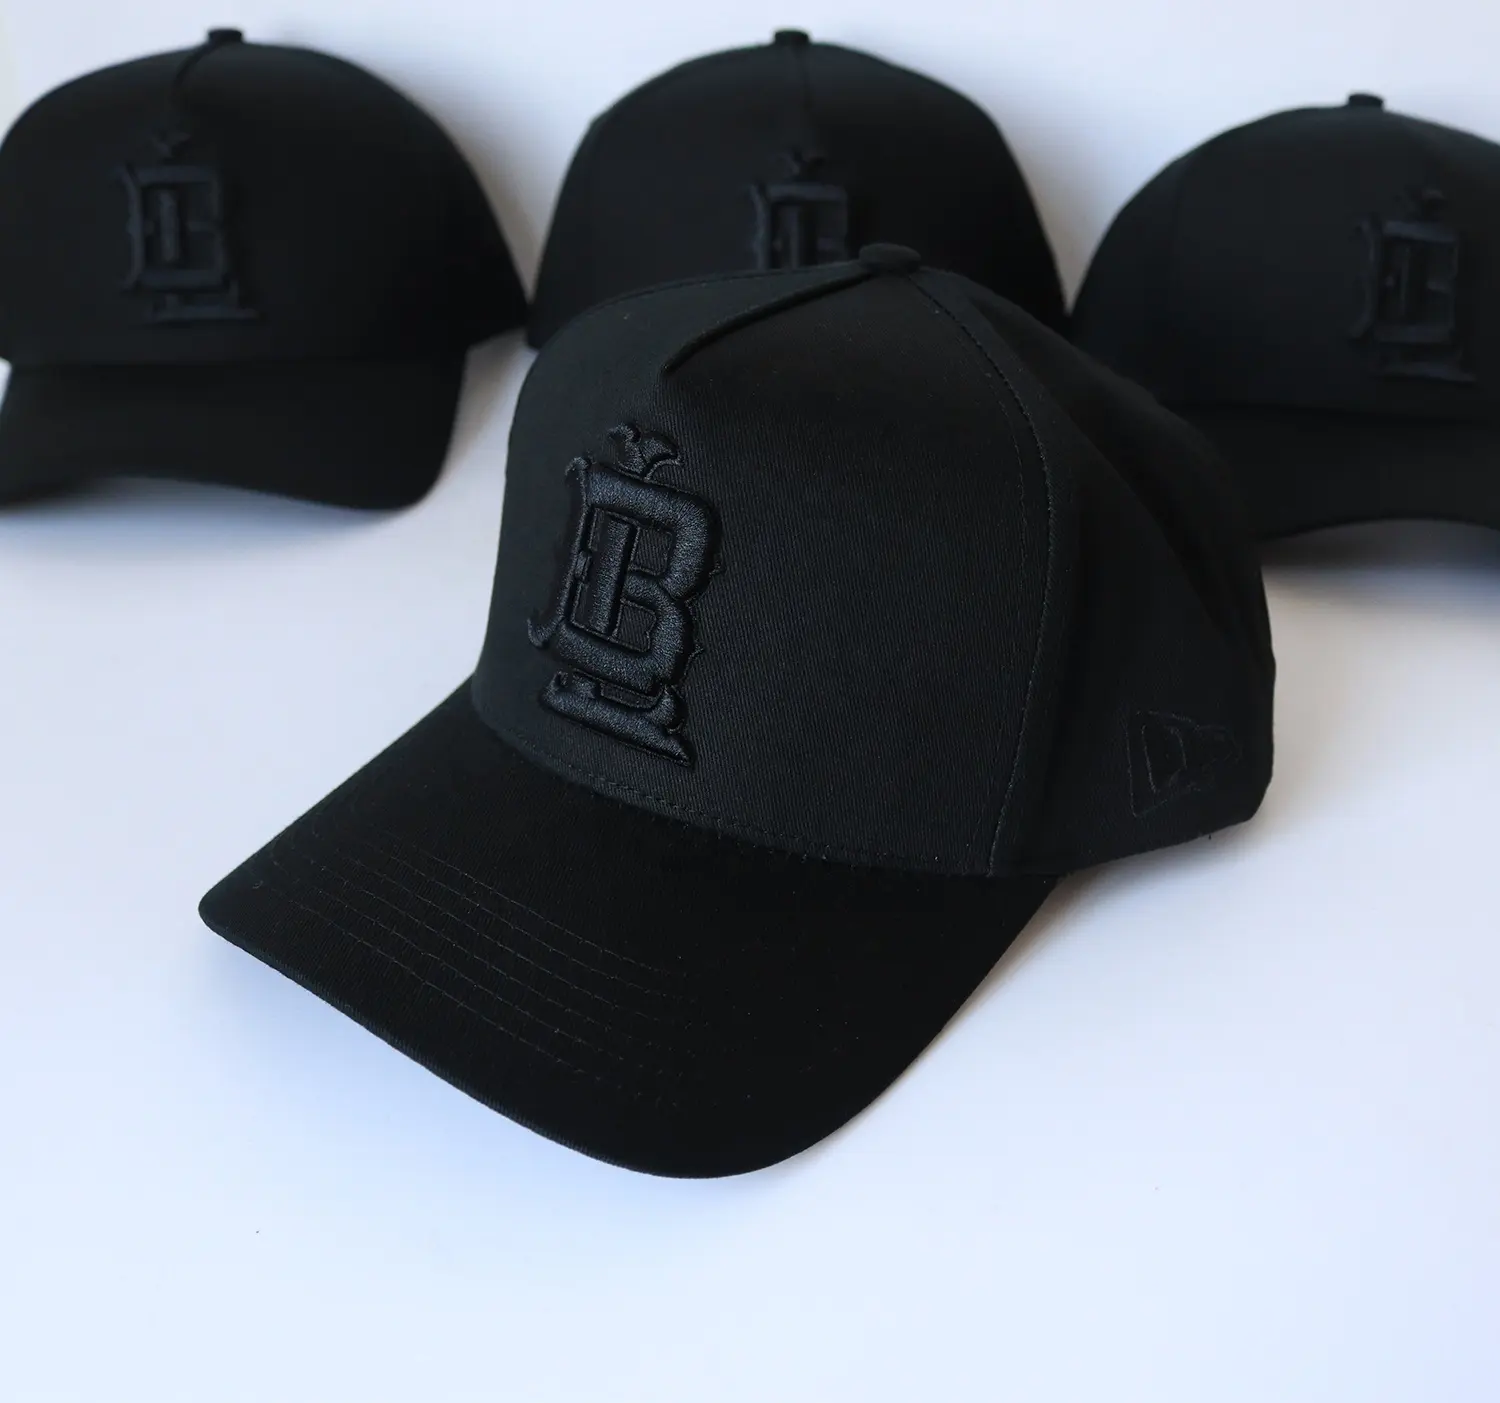 Пользовательский логотип 5 панелей сетчатая шляпа наружная реклама высокое качество черный логотип на черных кепках бейсболки